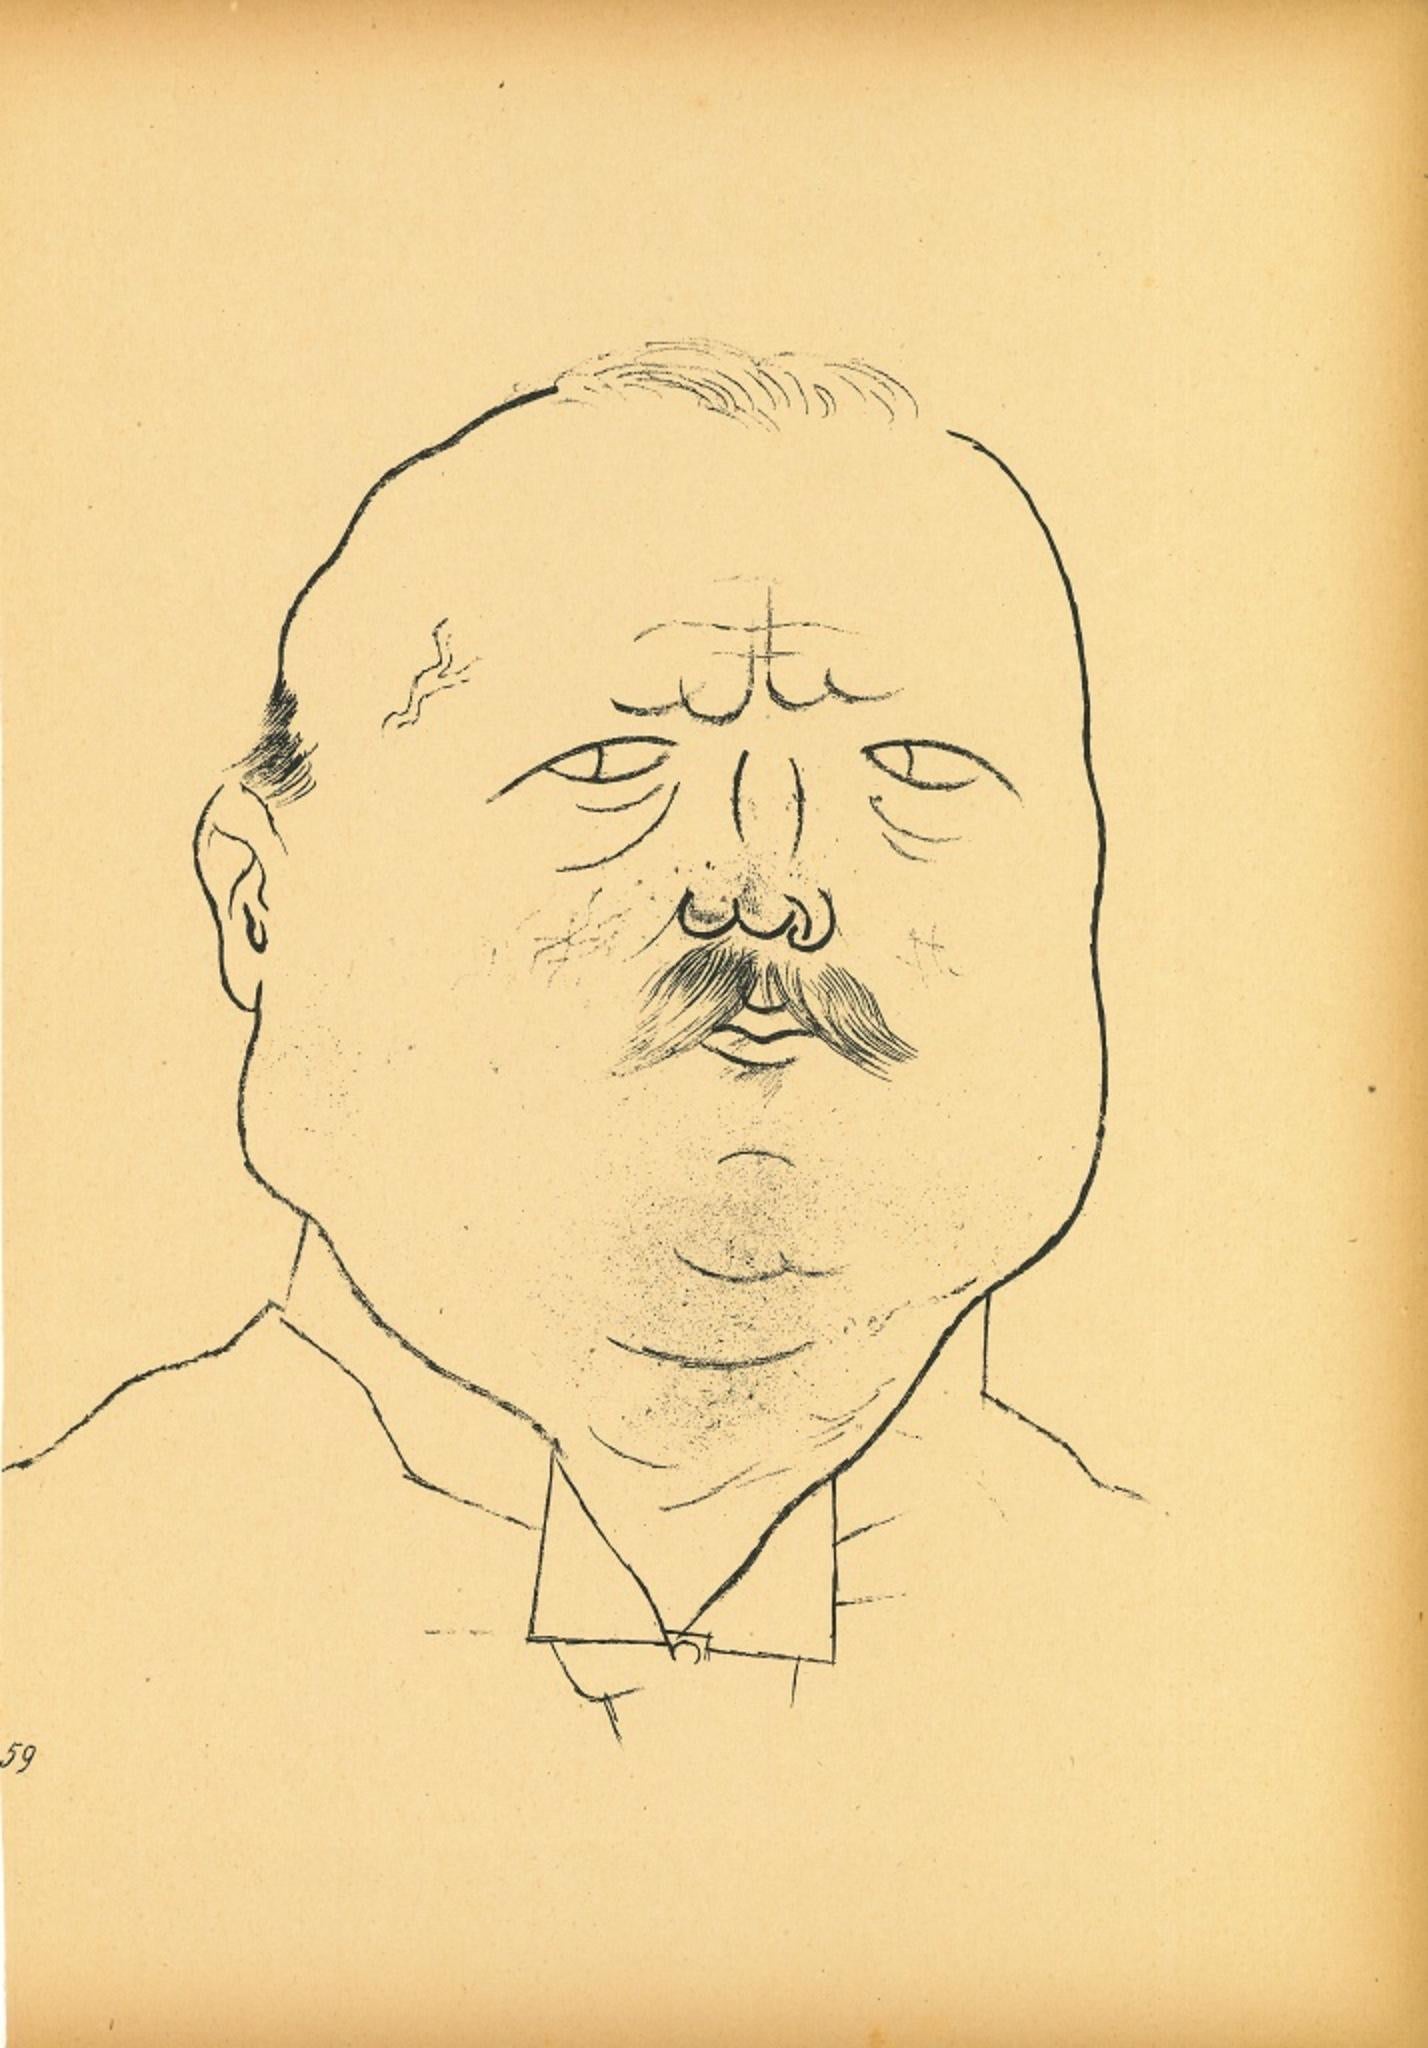 Man of Honor - Offset et lithographie de George Grosz - 1923